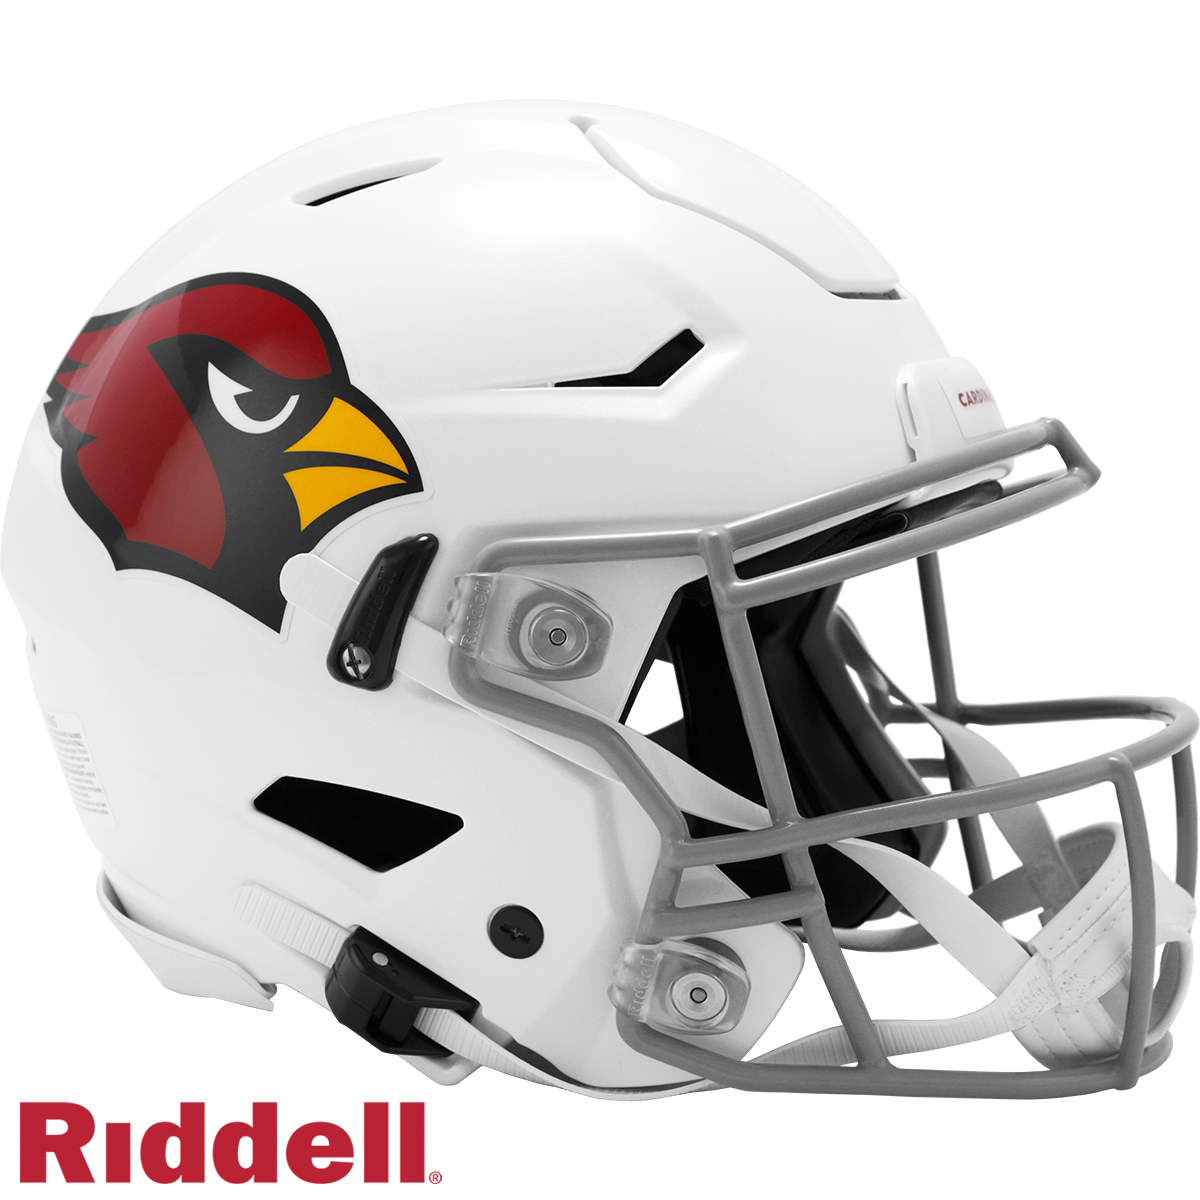 Arizona Cardinals Riddell LUNAR Alternate Revolution Speed Replica Football Helmet- OS